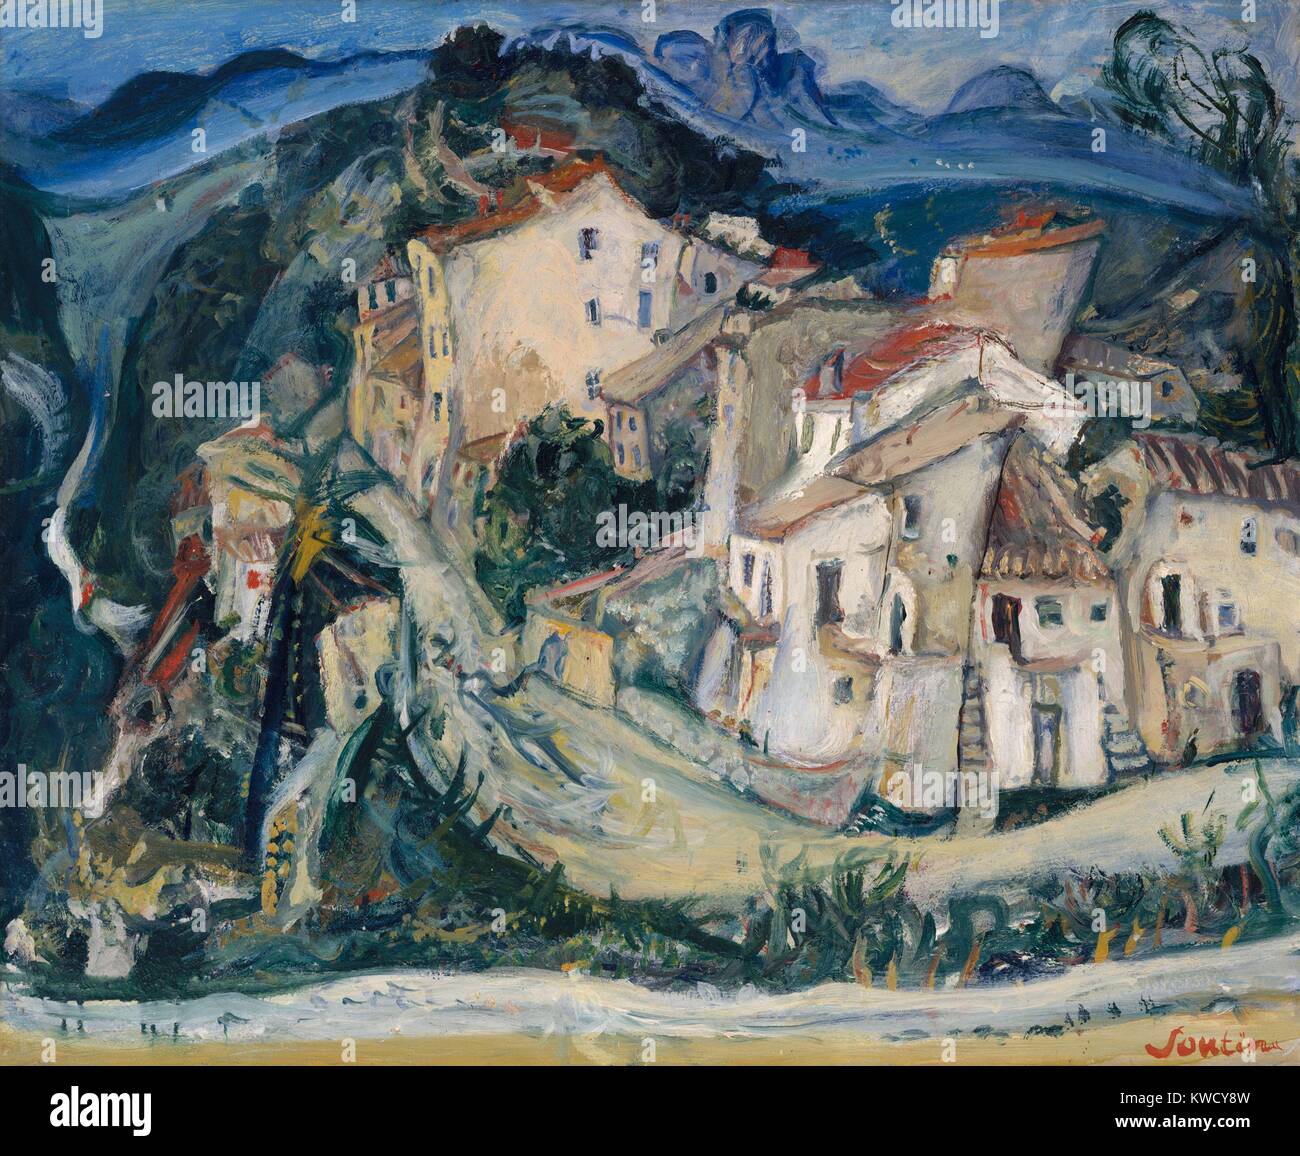 Vue de Cagnes, par Chaïm Soutine, 1924-1925, peinture expressionniste Russe Français, huile sur toile. 1923 à 1925, Soutine vécu dans le village de montagne de Cagnes sur le fil. Ce paysage peint avec son pinceau expressionniste, d'empilage et de di (BSLOC 2017 5 152) Banque D'Images